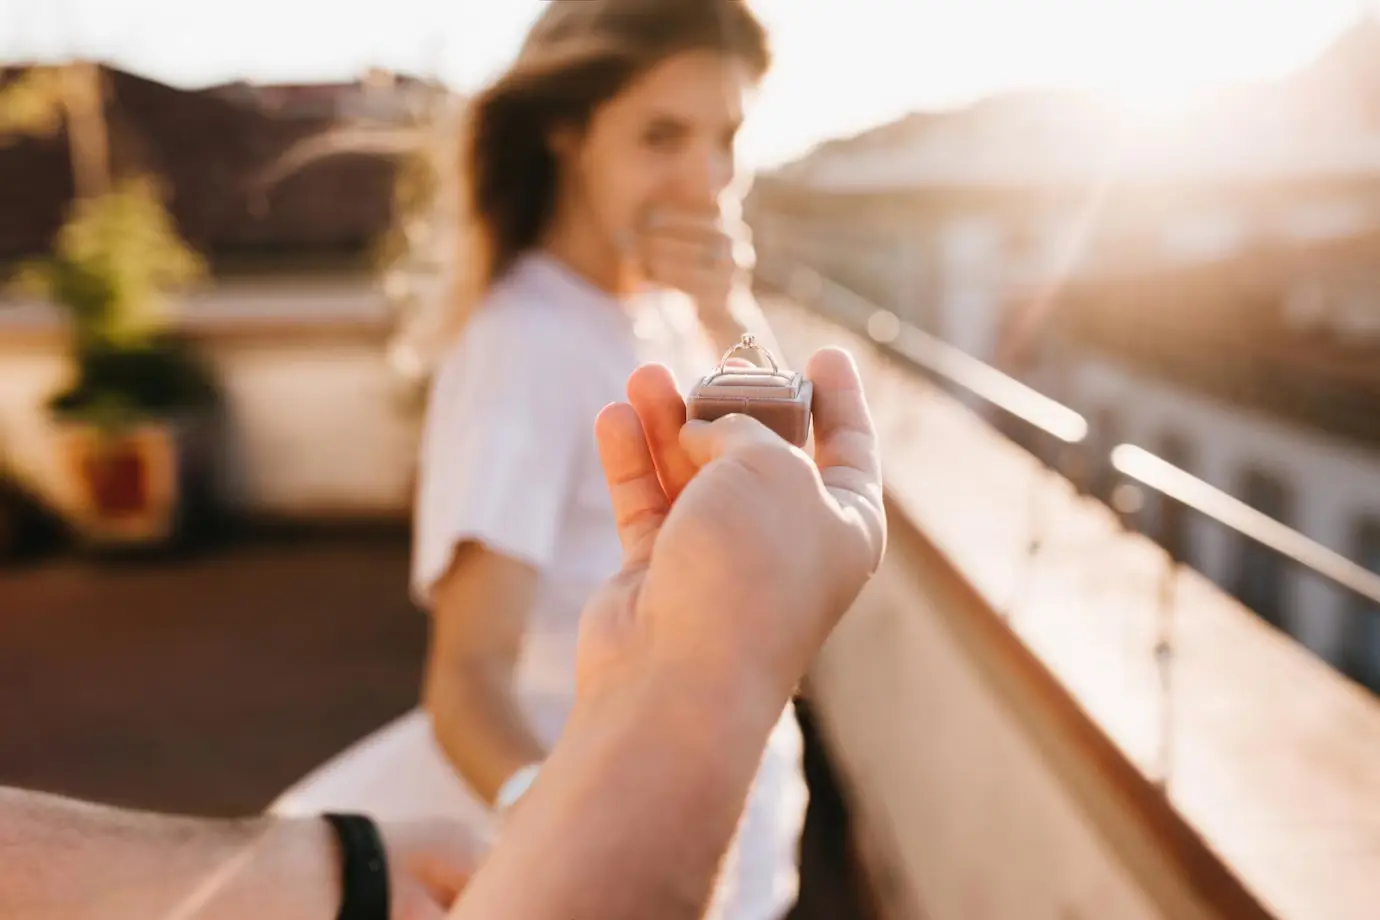 Egy férfi eljegyzési gyűrűvel kéri meg egy nő kezét